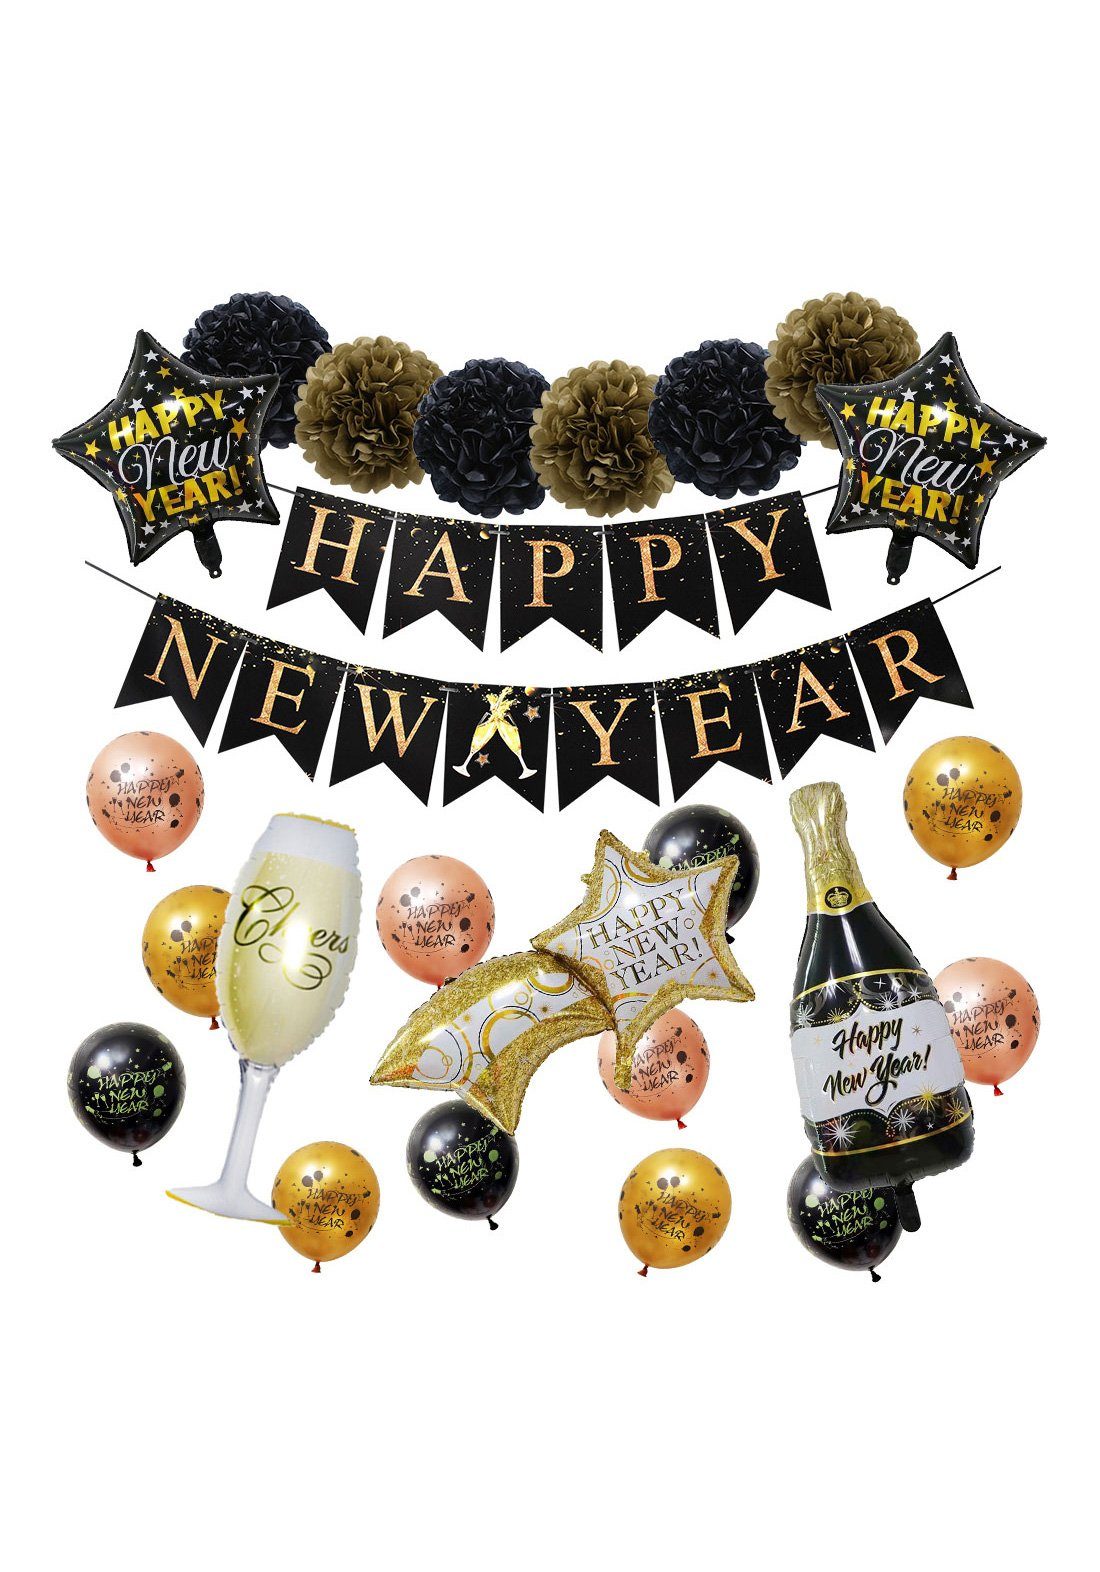 Vivi Idee Luftballon Luftballon Year, Happy Set Papier New Silvester Banner deko Neujahr Partydeko